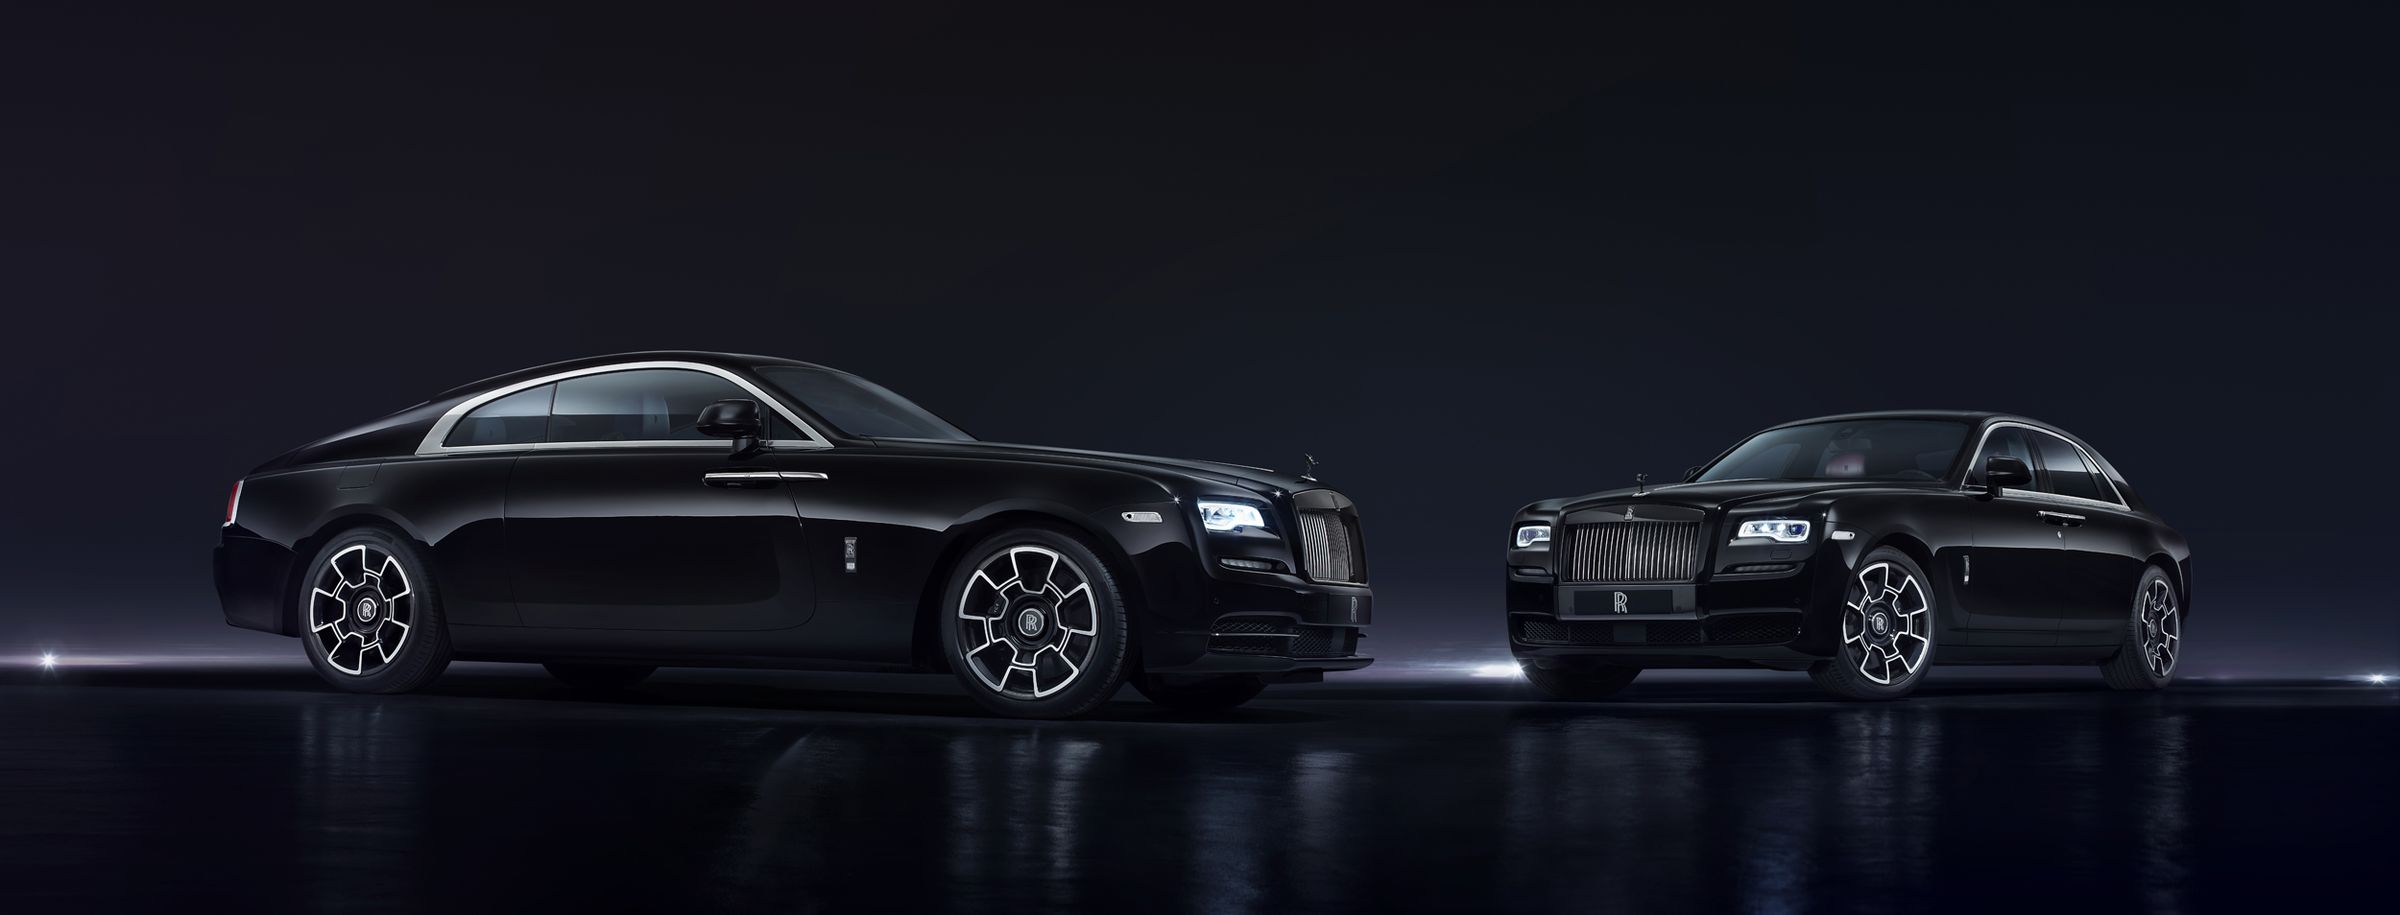 Rolls-Royce Black Badge Gallery